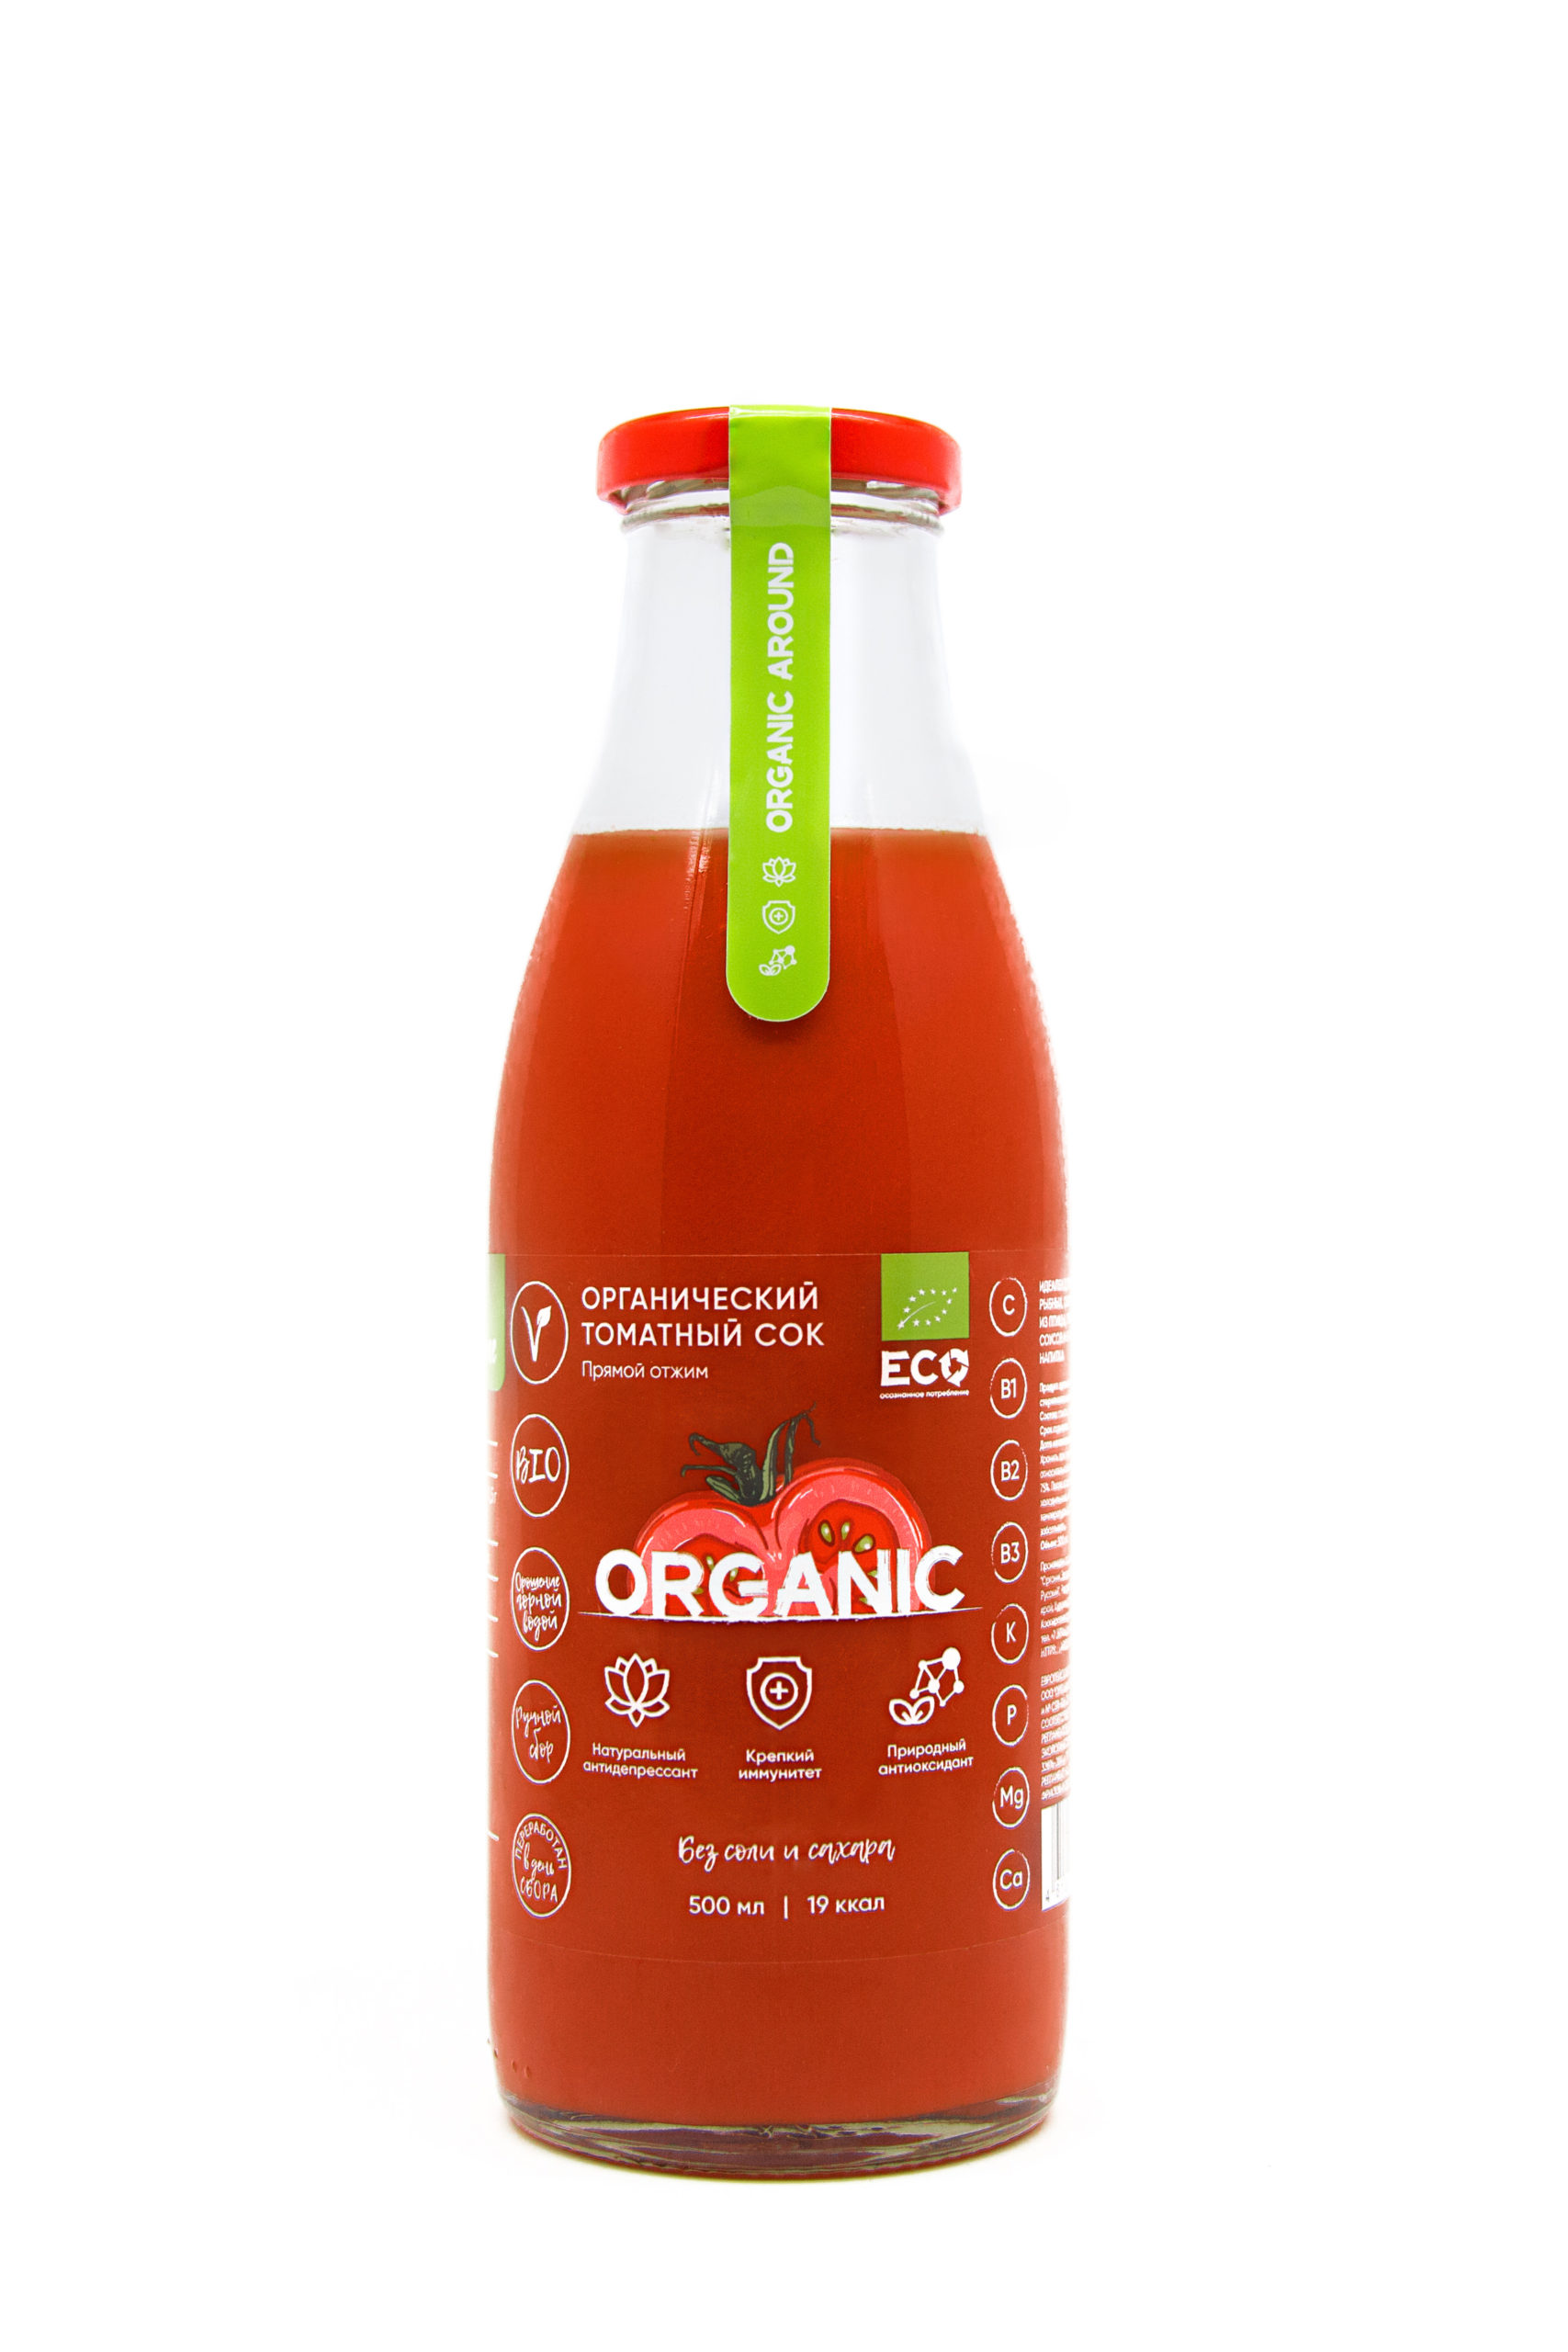 Сок томатный, прямой отжим, без соли и сахара. Органический продукт.